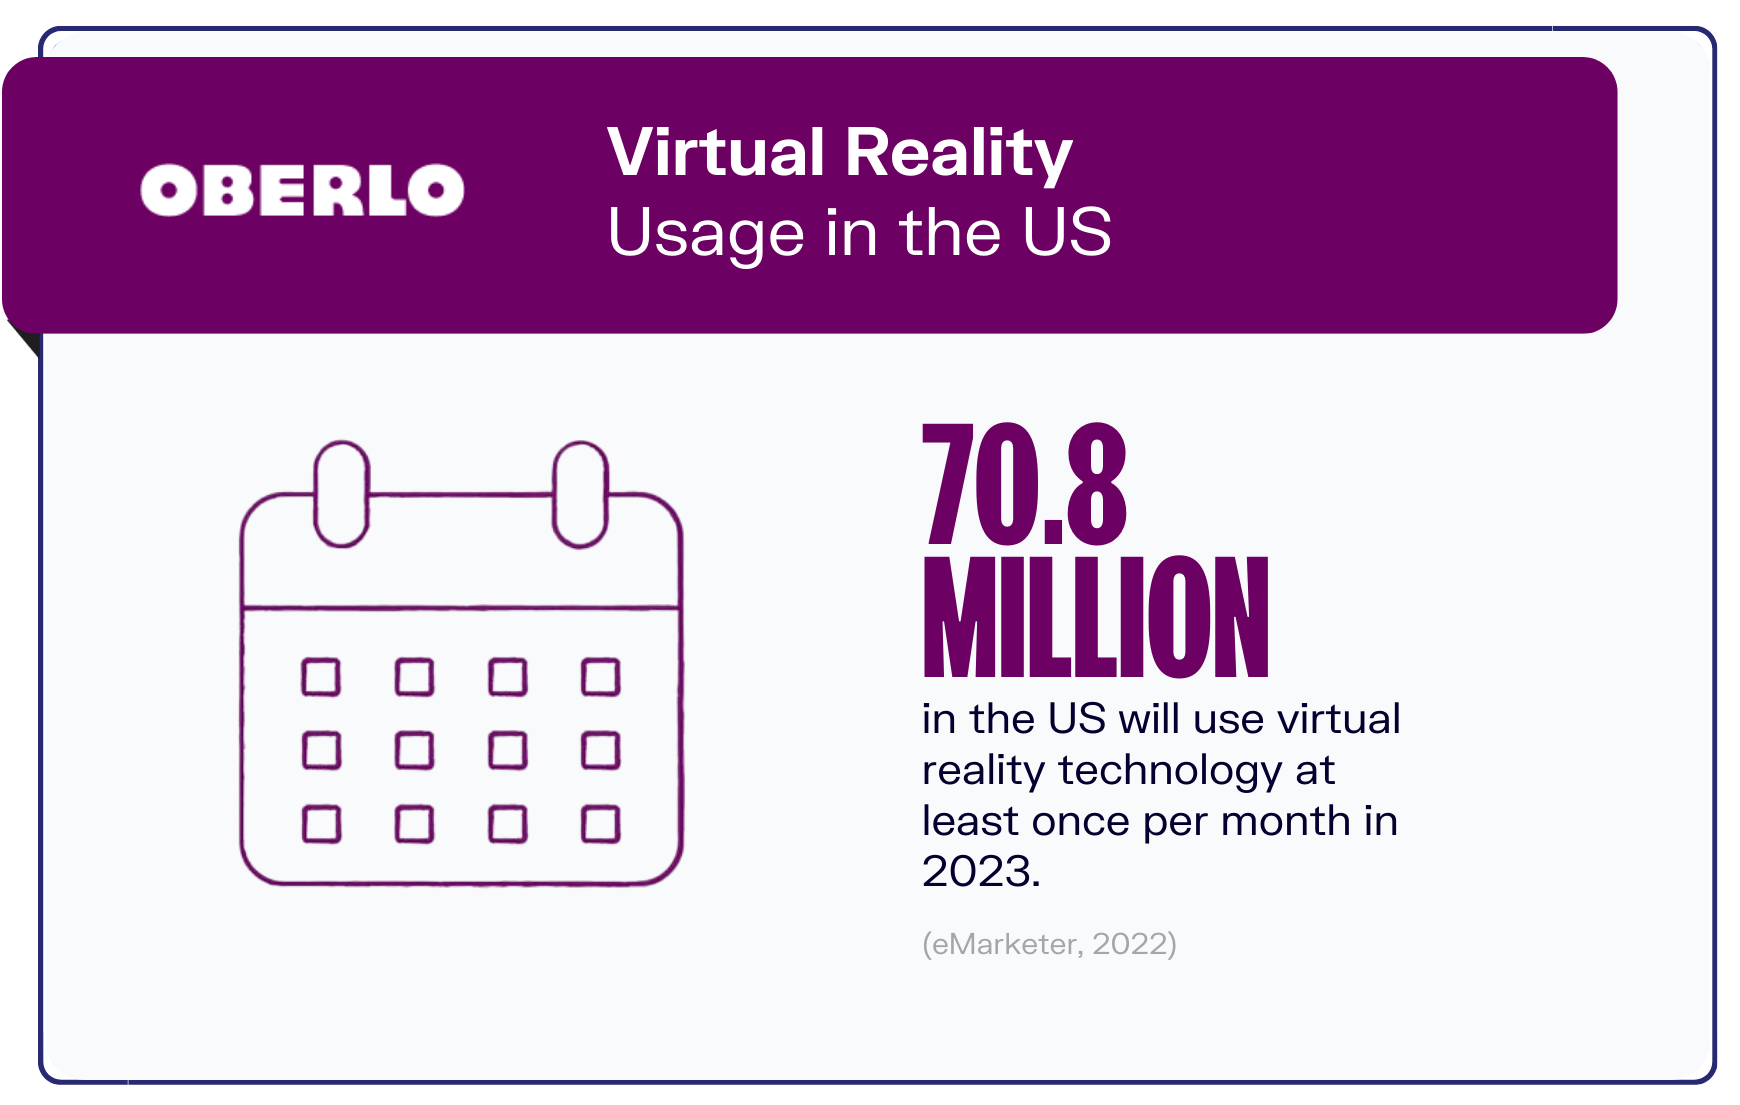 statistiques sur la réalité virtuelle graphique5